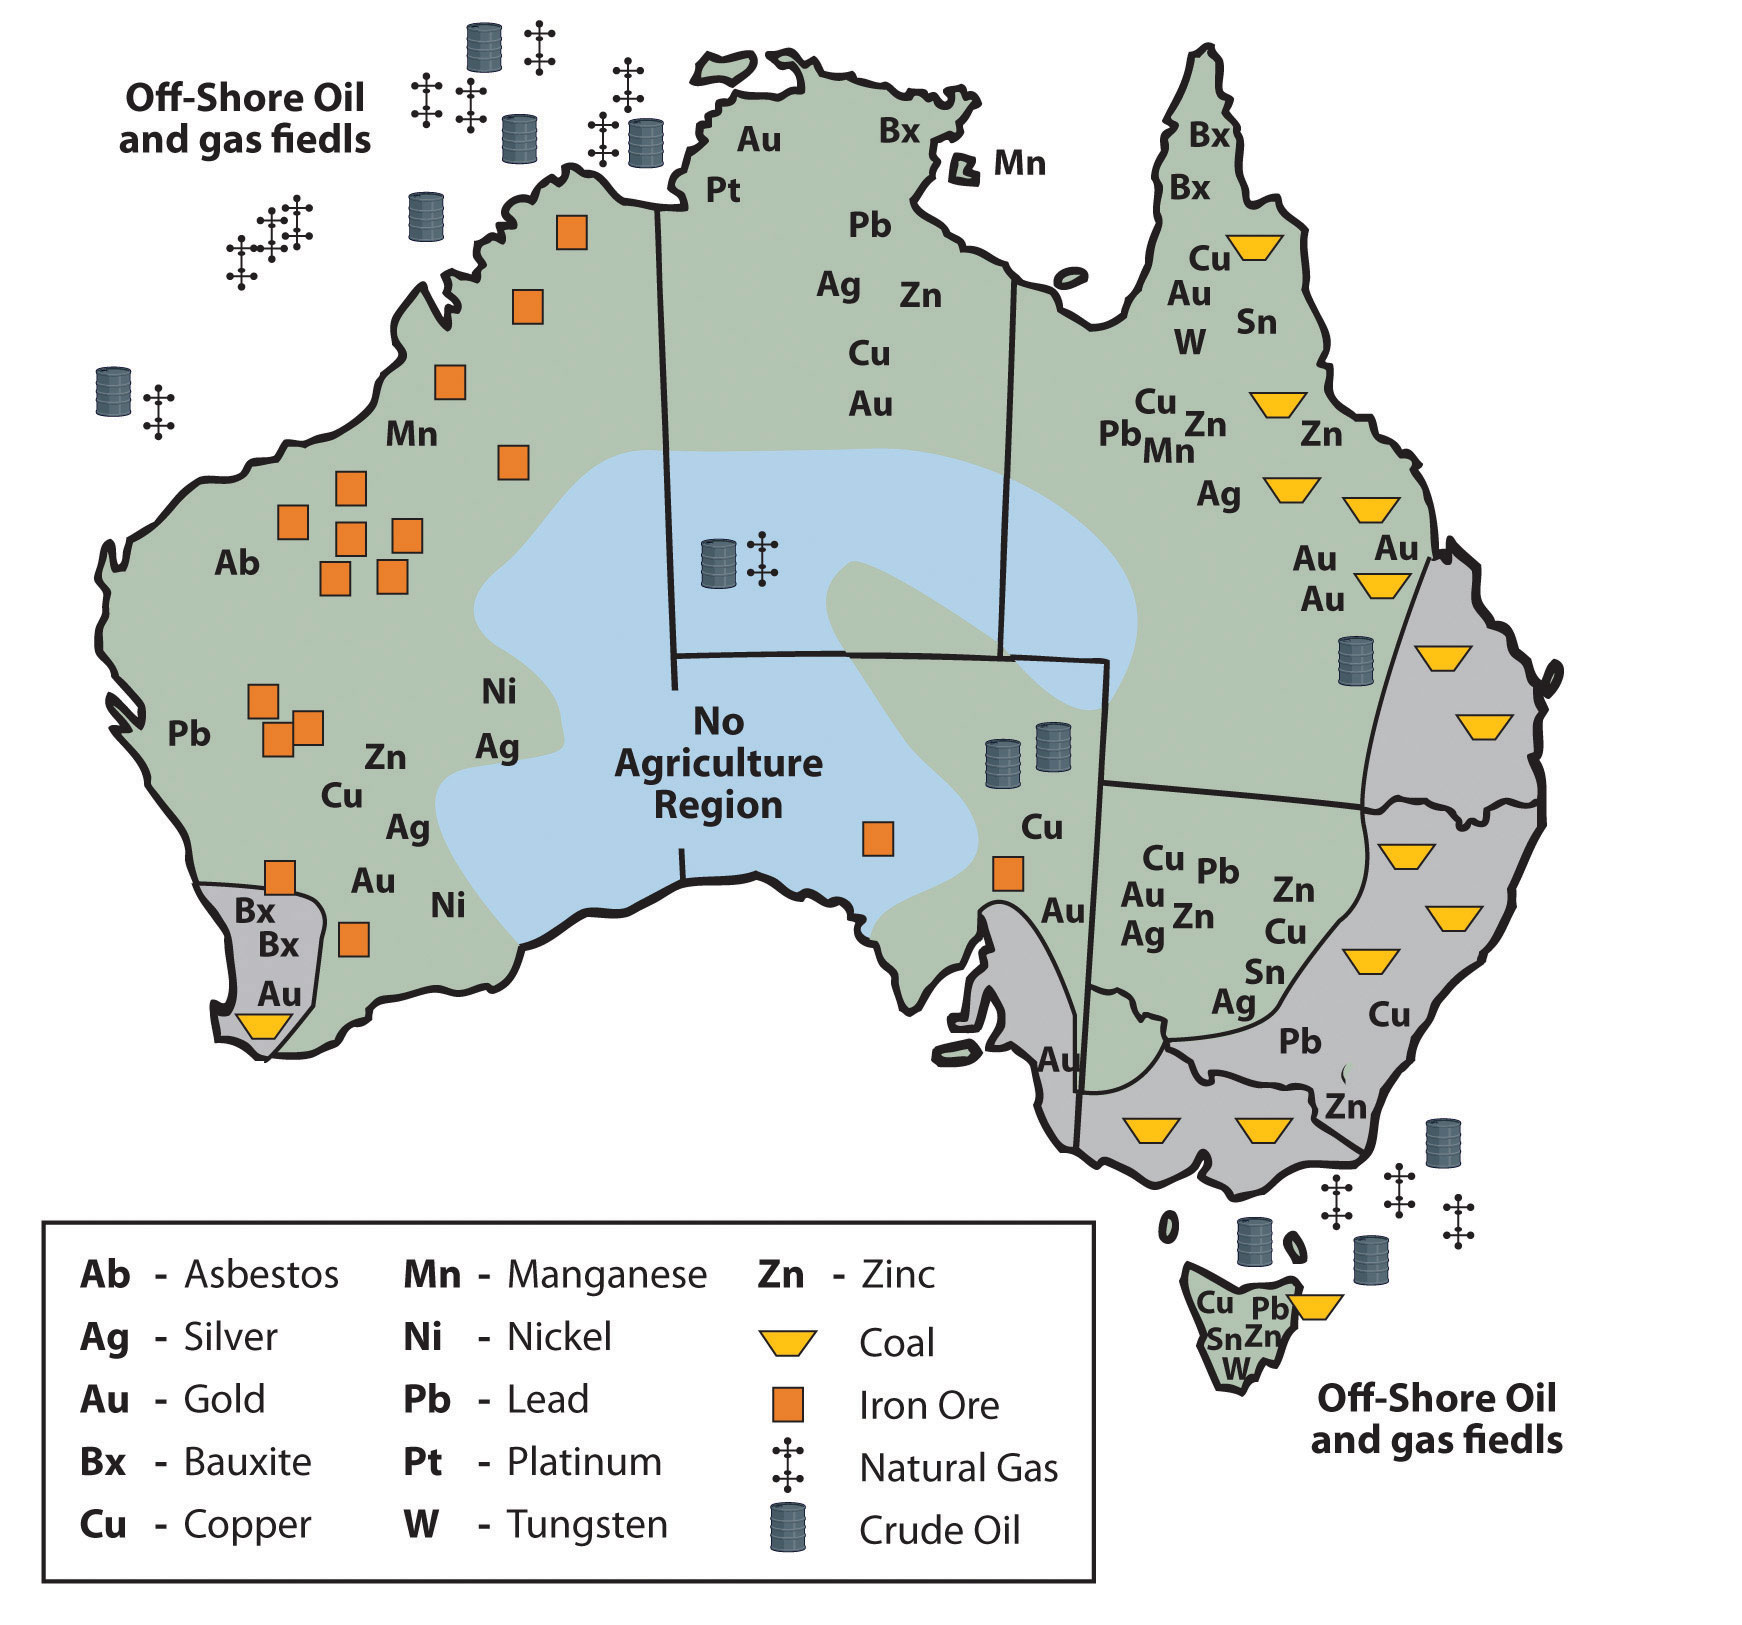 Природные ресурсы австралии и океании